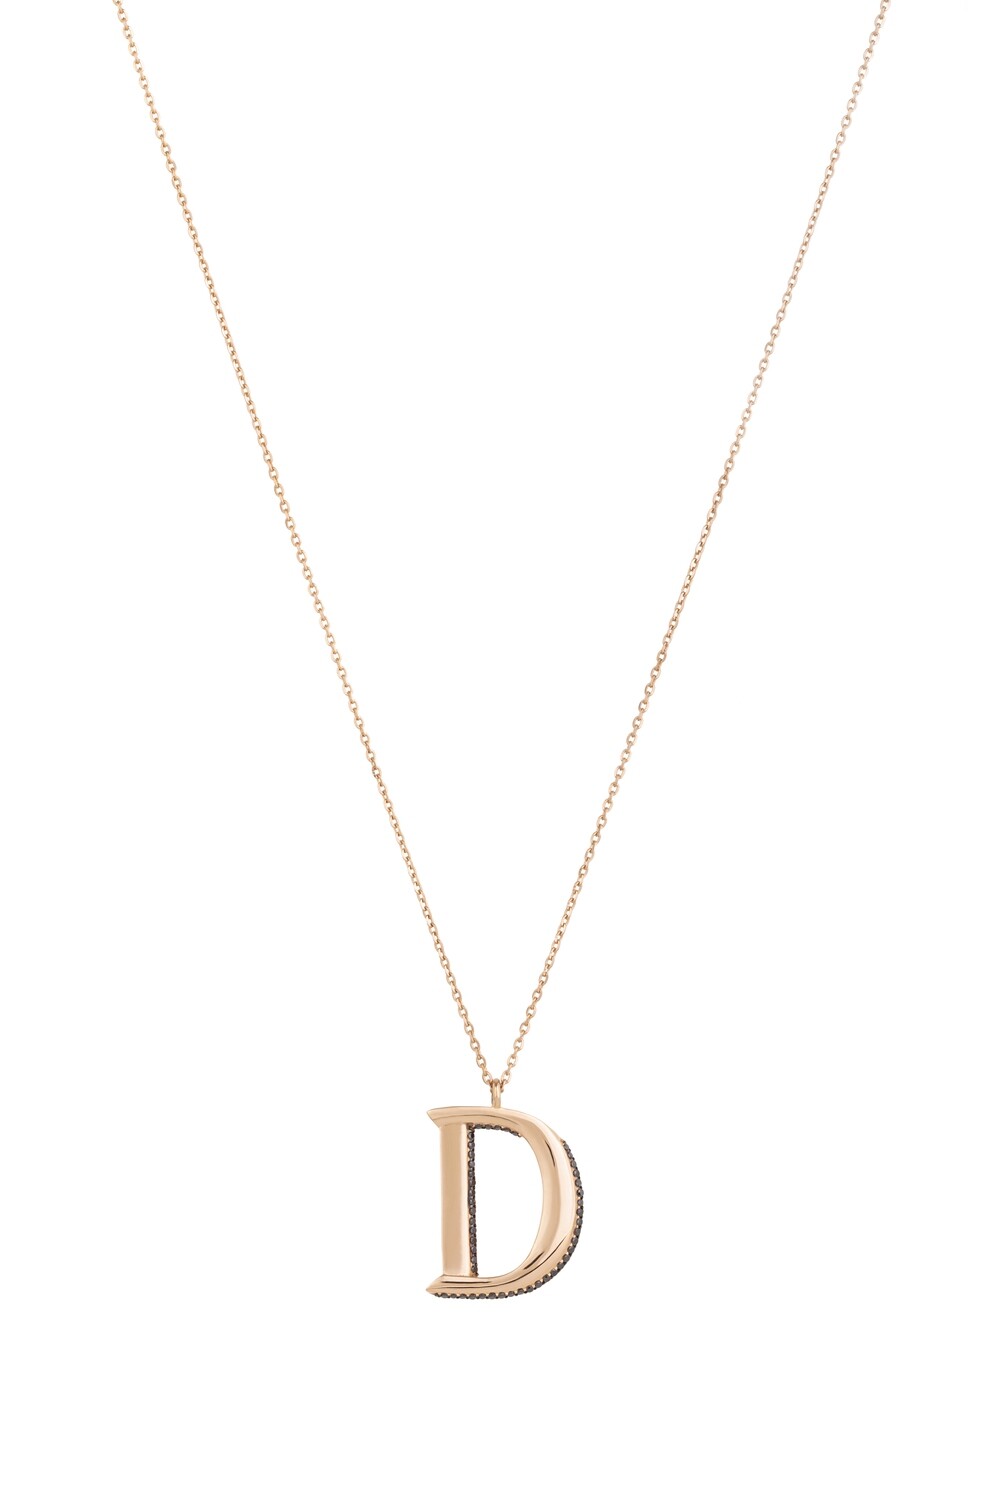 Initials Fancy Black Diamond Necklace, D